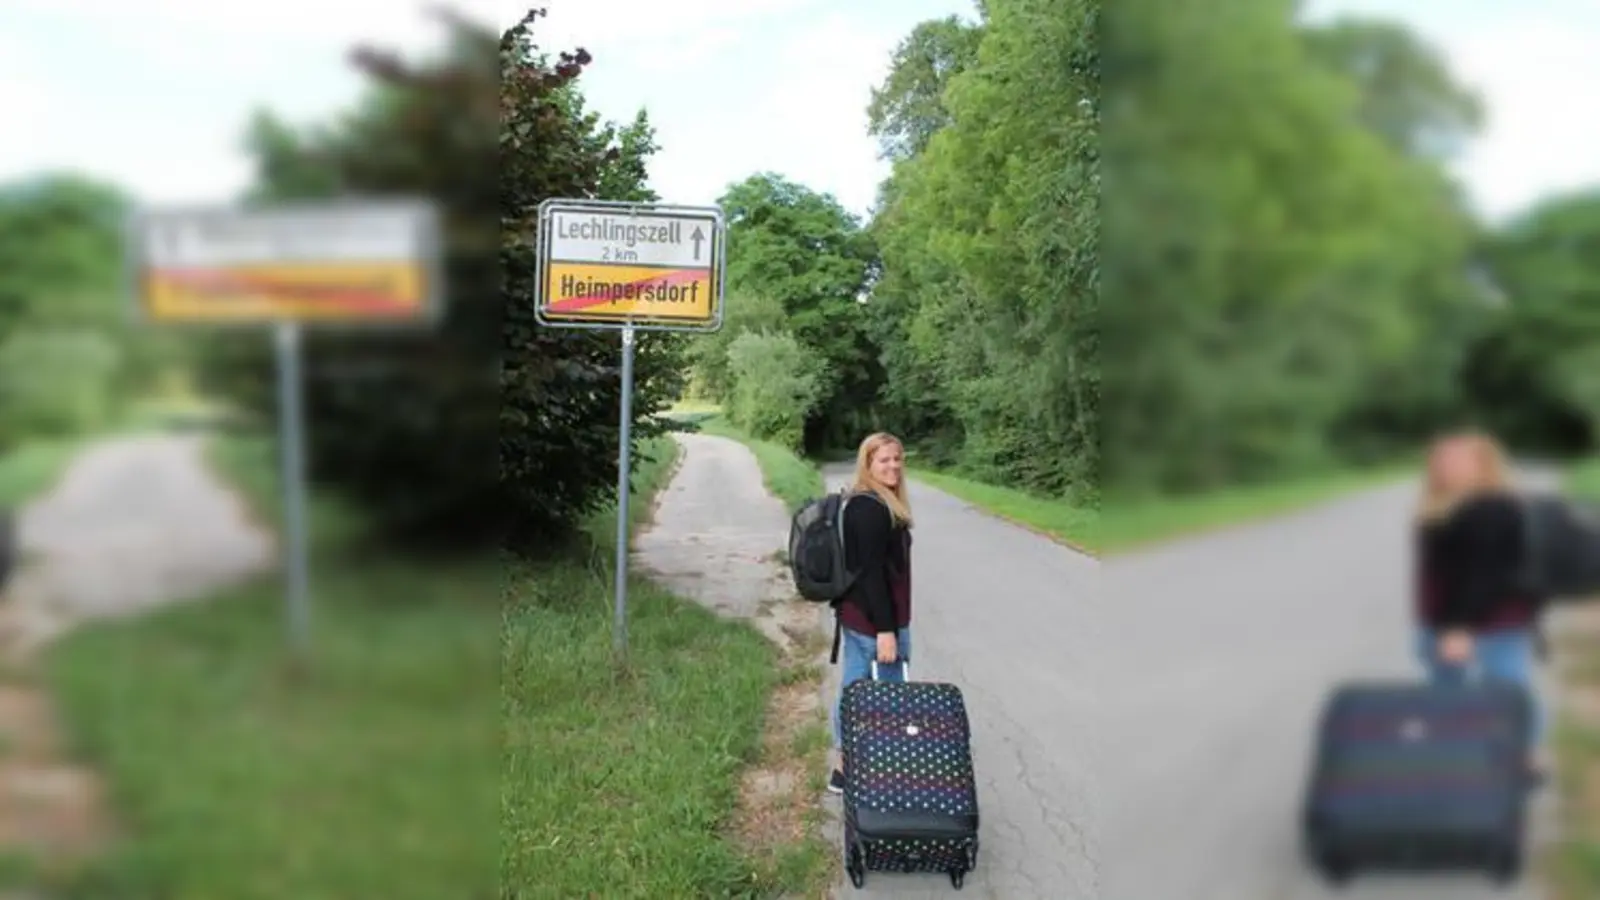 Der Koffer ist gepackt : Bald startet das Abenteuer Malawi für die 21-jährige Lea Specht aus Heimpersdorf. 	Foto: Andreas Dengler (Foto: Andreas Dengler)